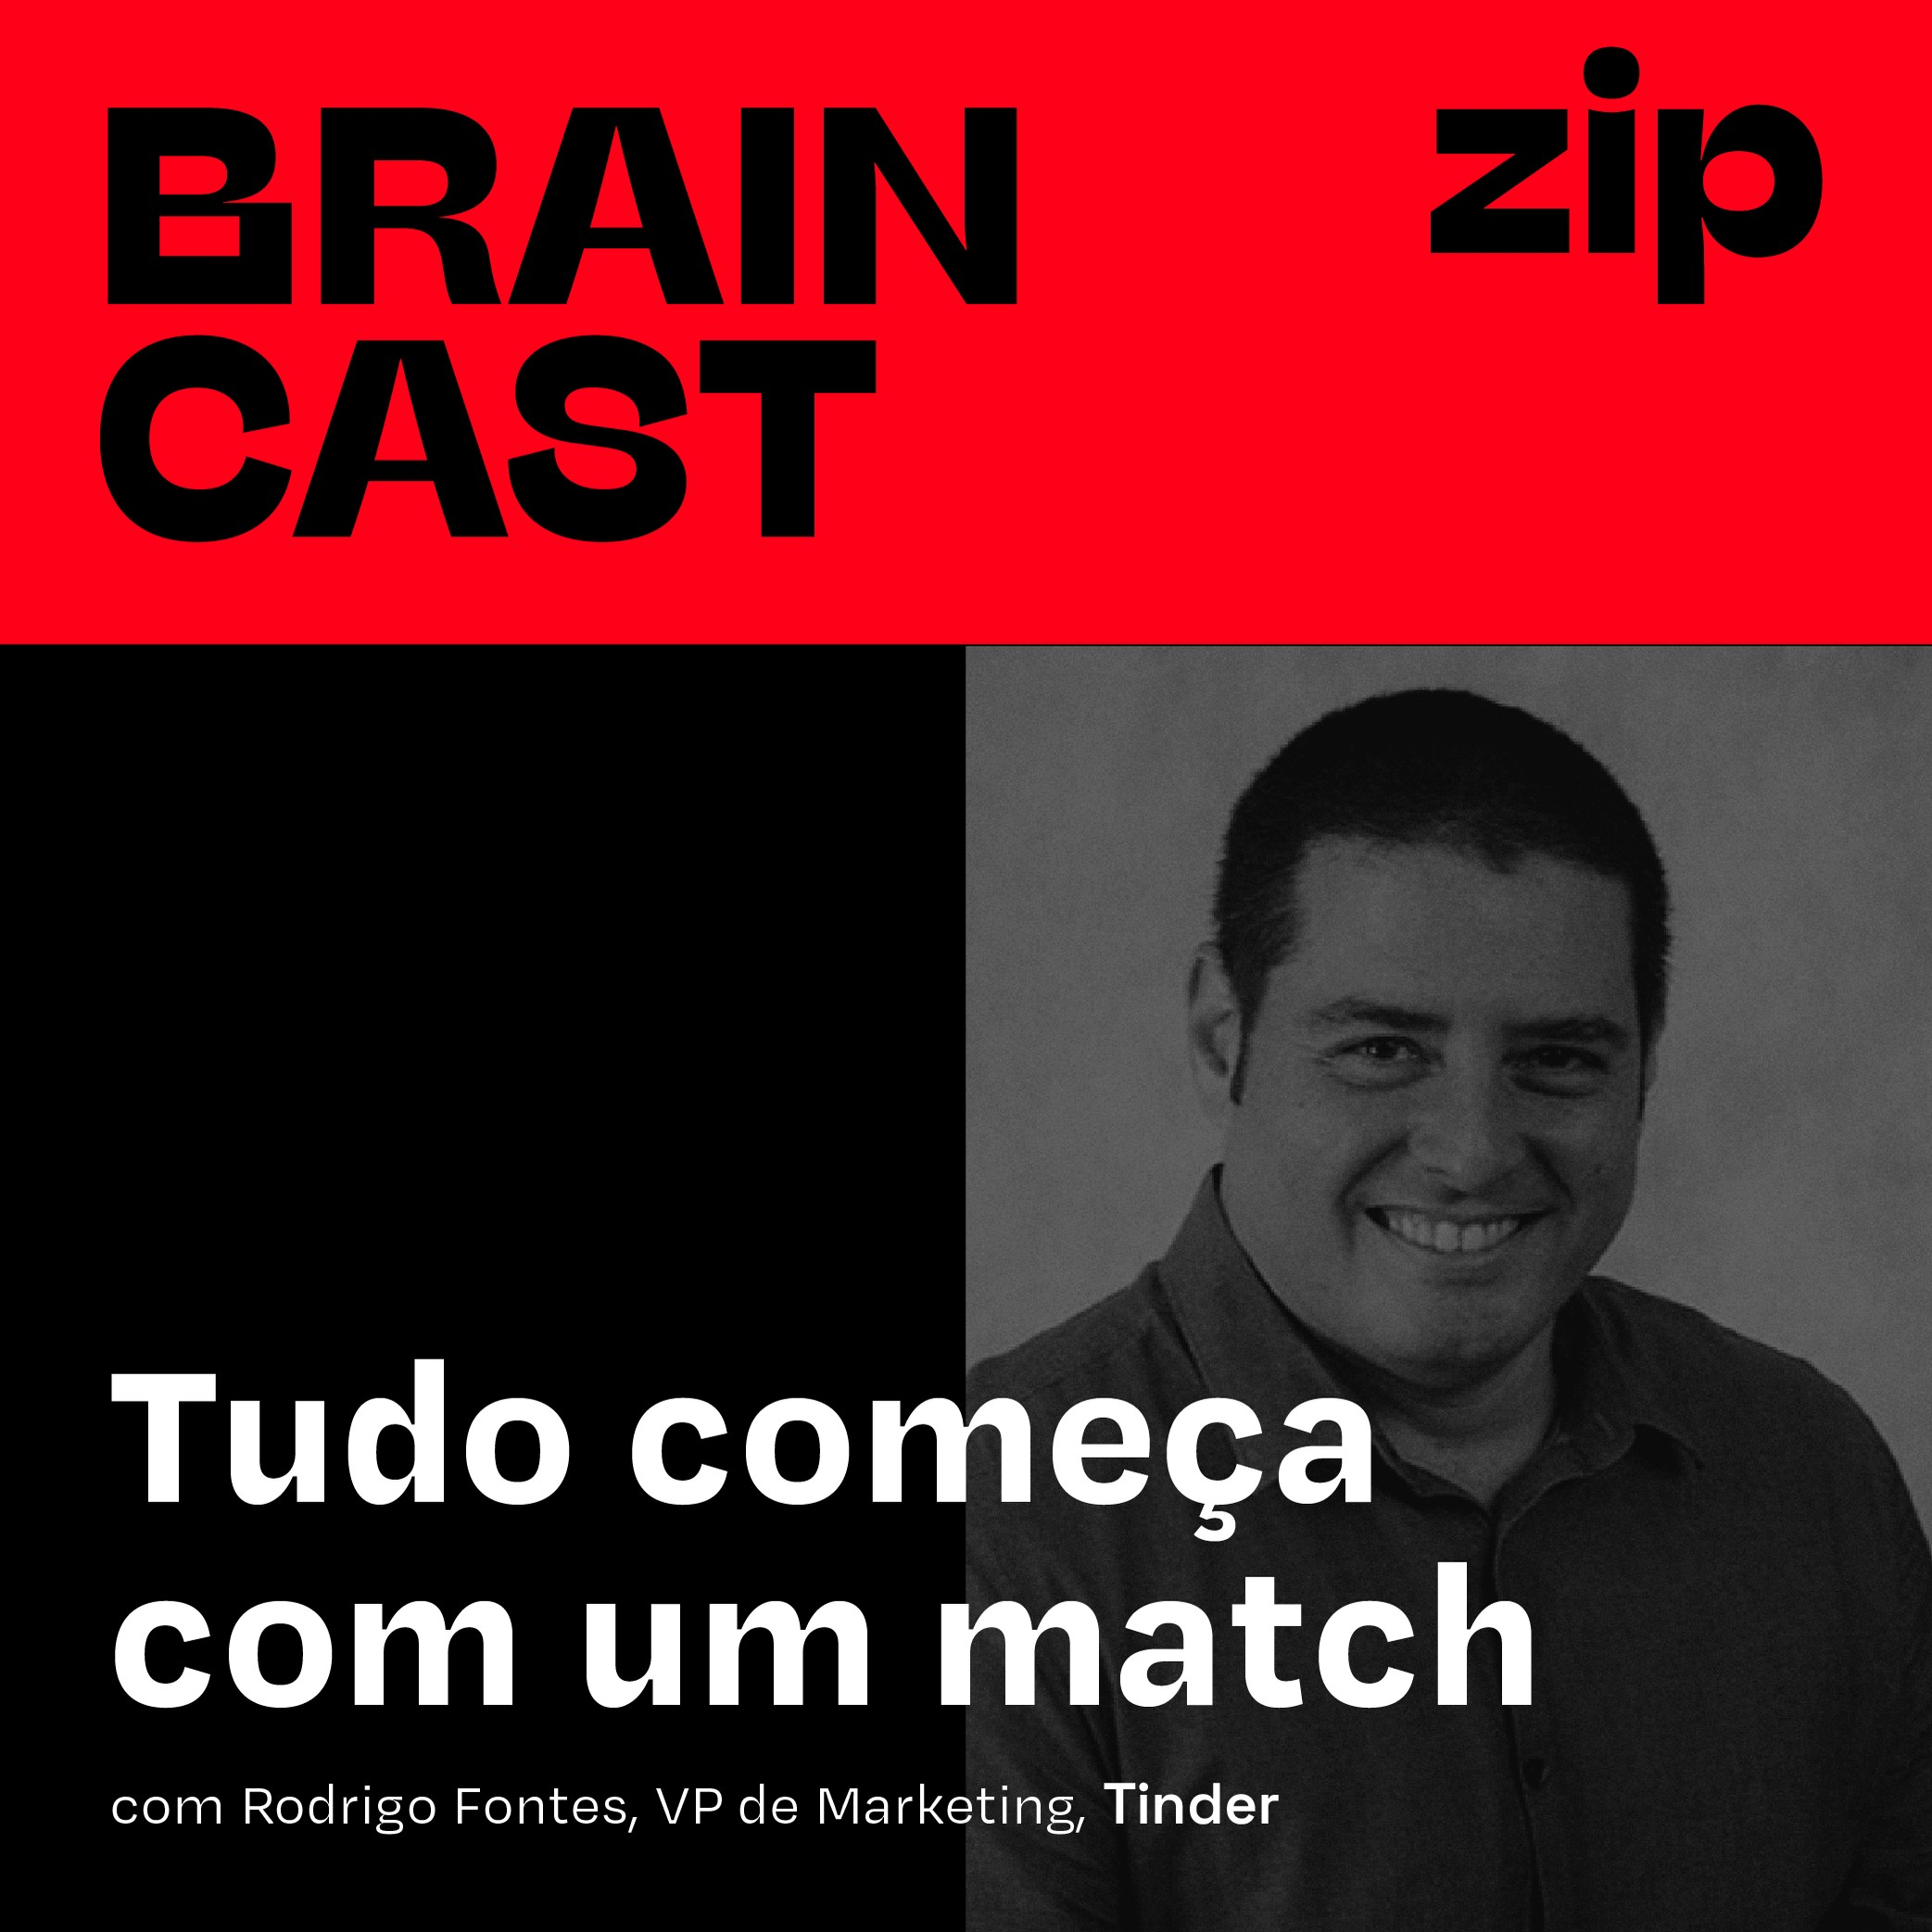 [zip] Tudo começa com um match | com Rodrigo Fontes, VP de Marketing, Tinder